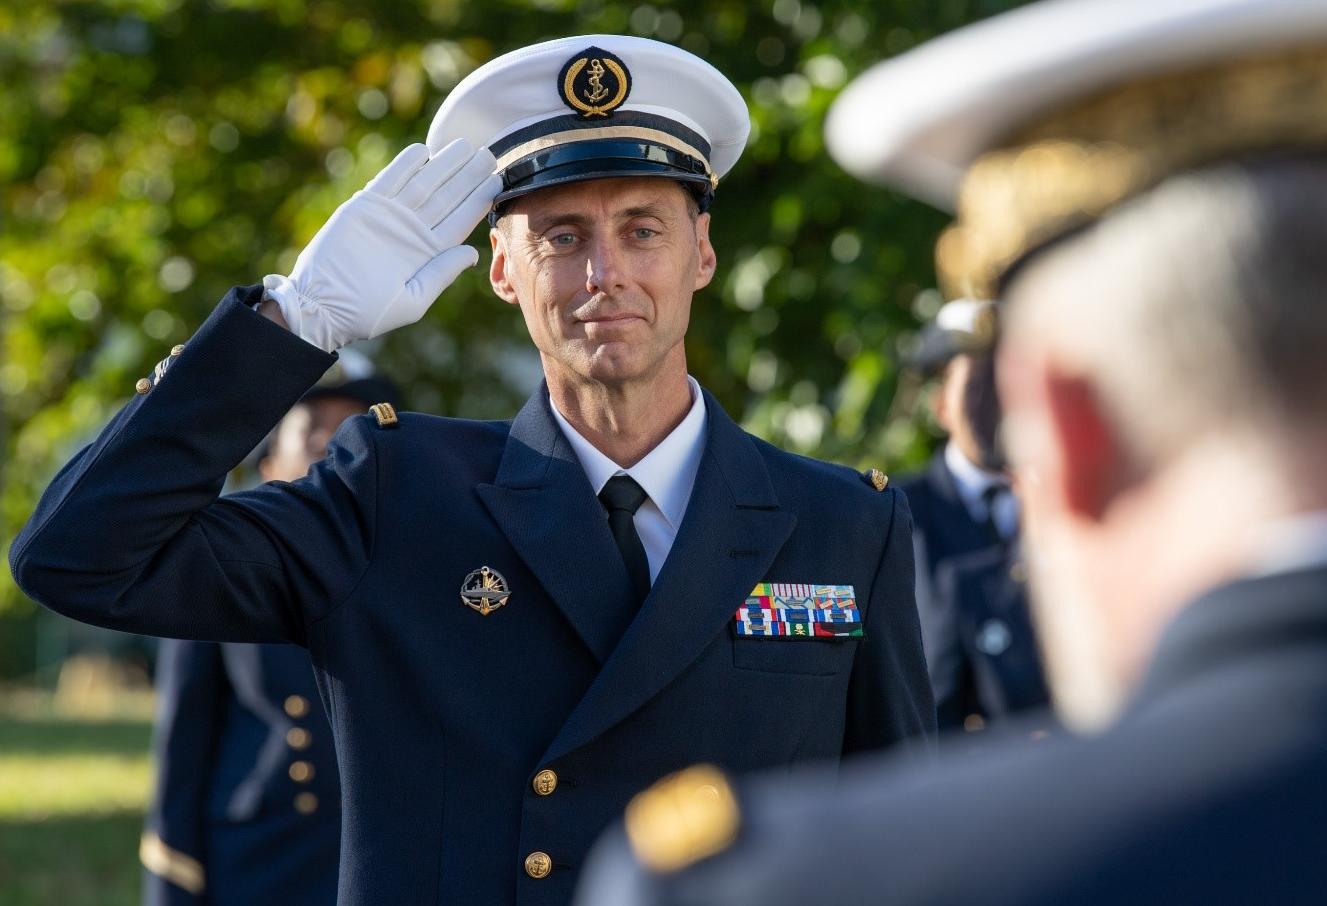  FRMARFOR – Le major Stéphane quitte la Marine après 33 ans d’expertise météo au profit des opérations